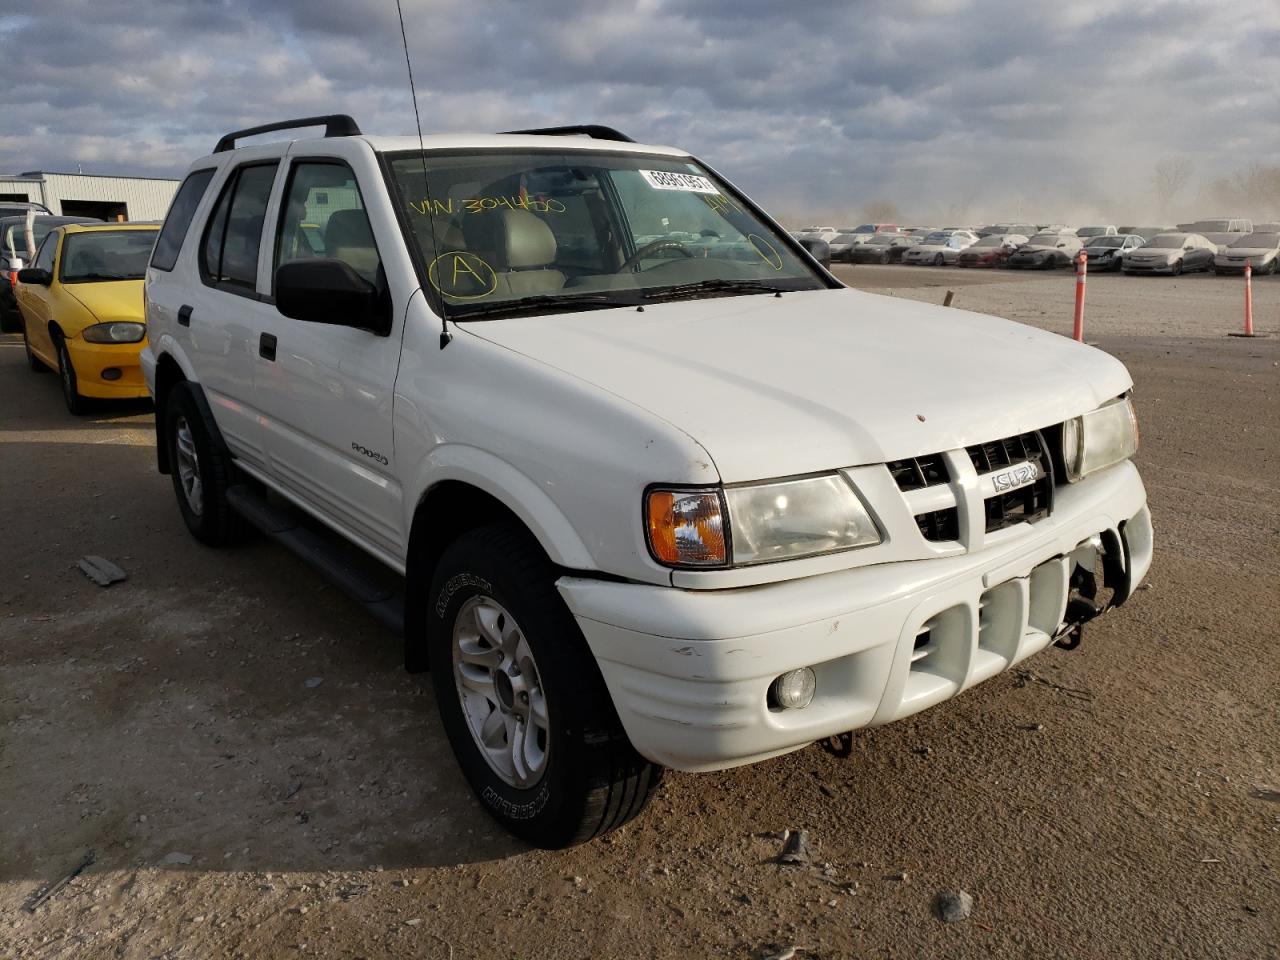 ISUZU RODEO S 2003, 4S2DM58W834304450 — Auto Auction Spot